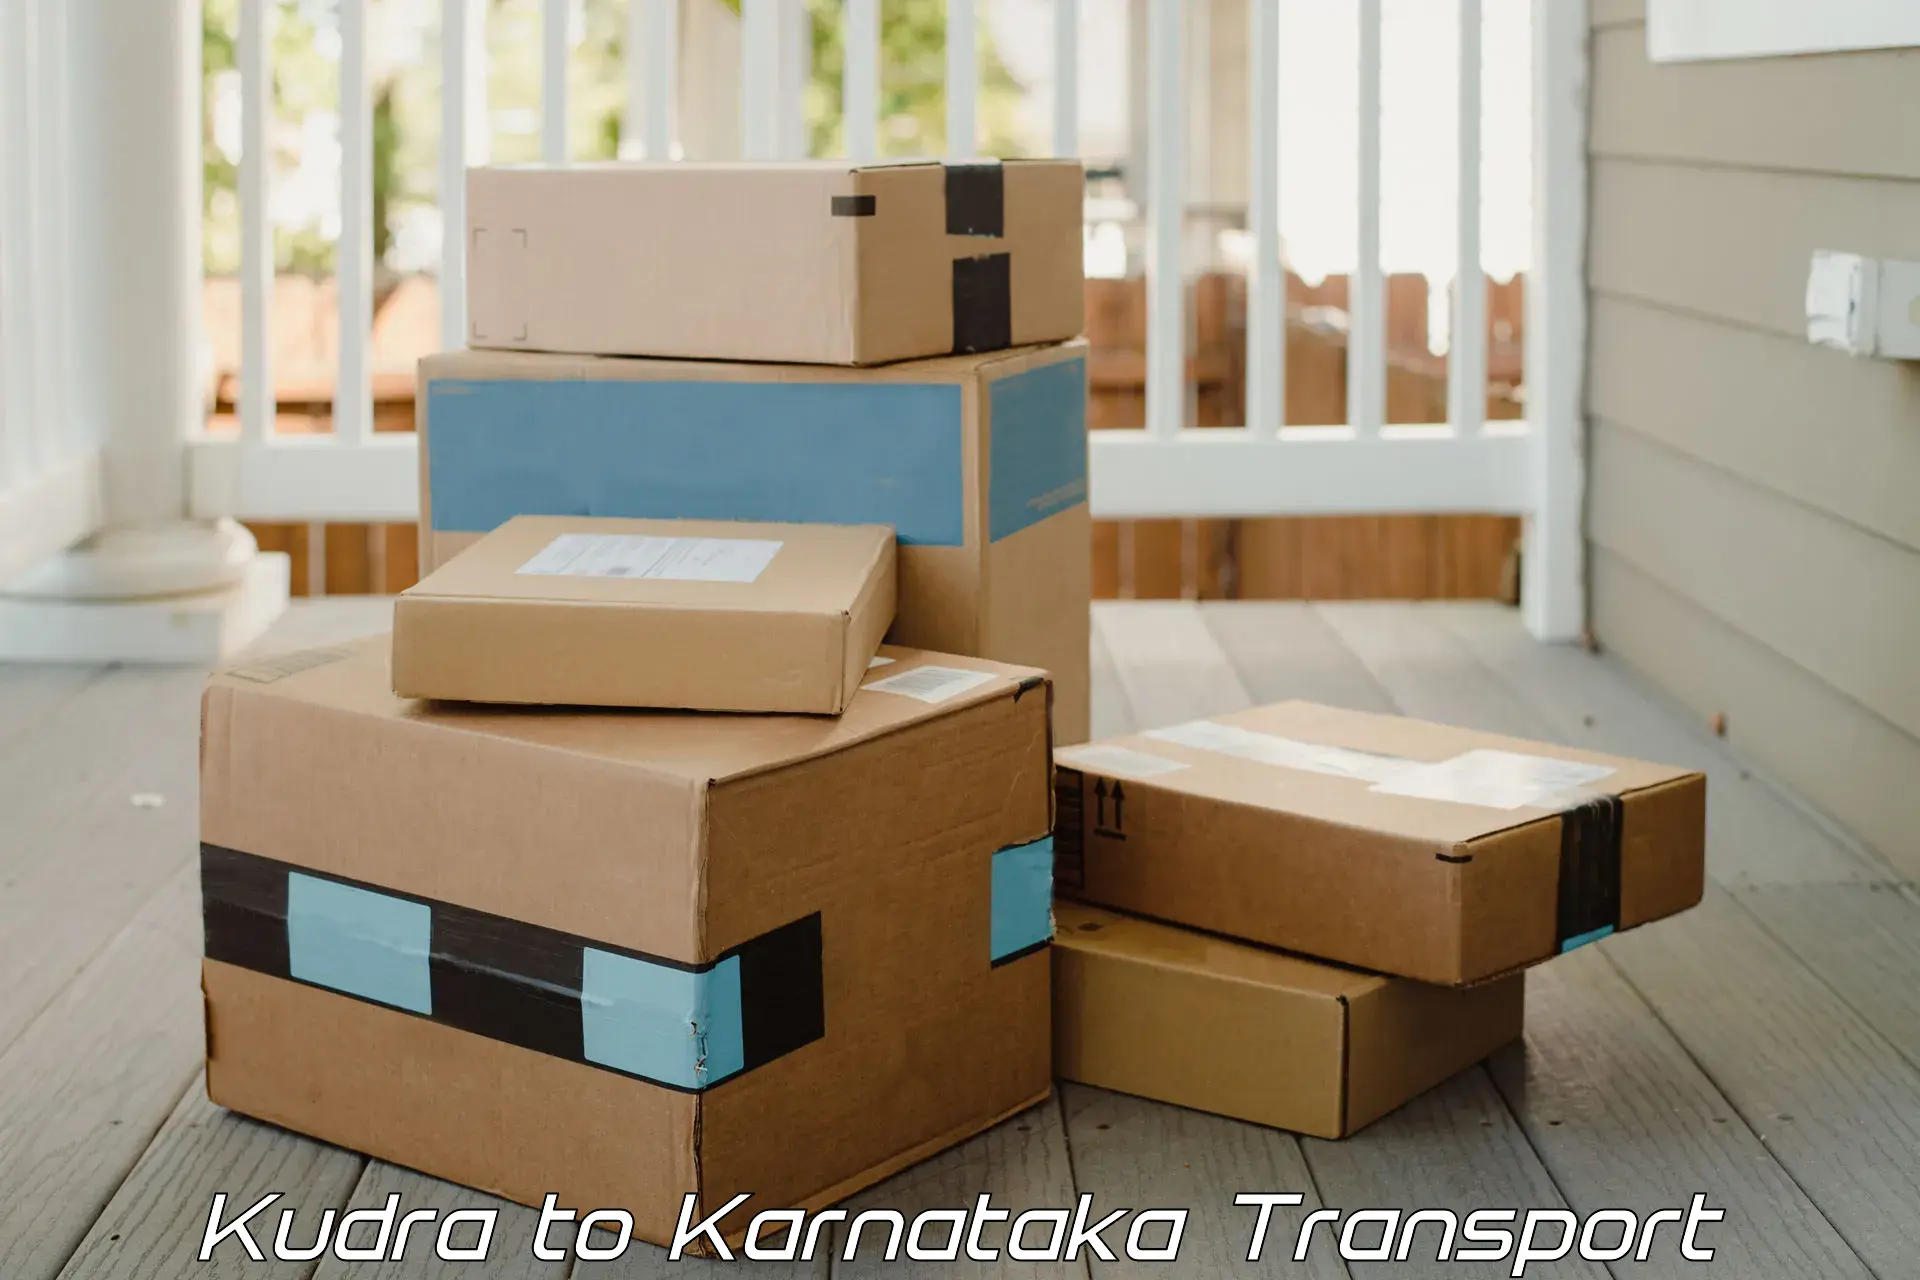 Transport in sharing Kudra to Gundlupete